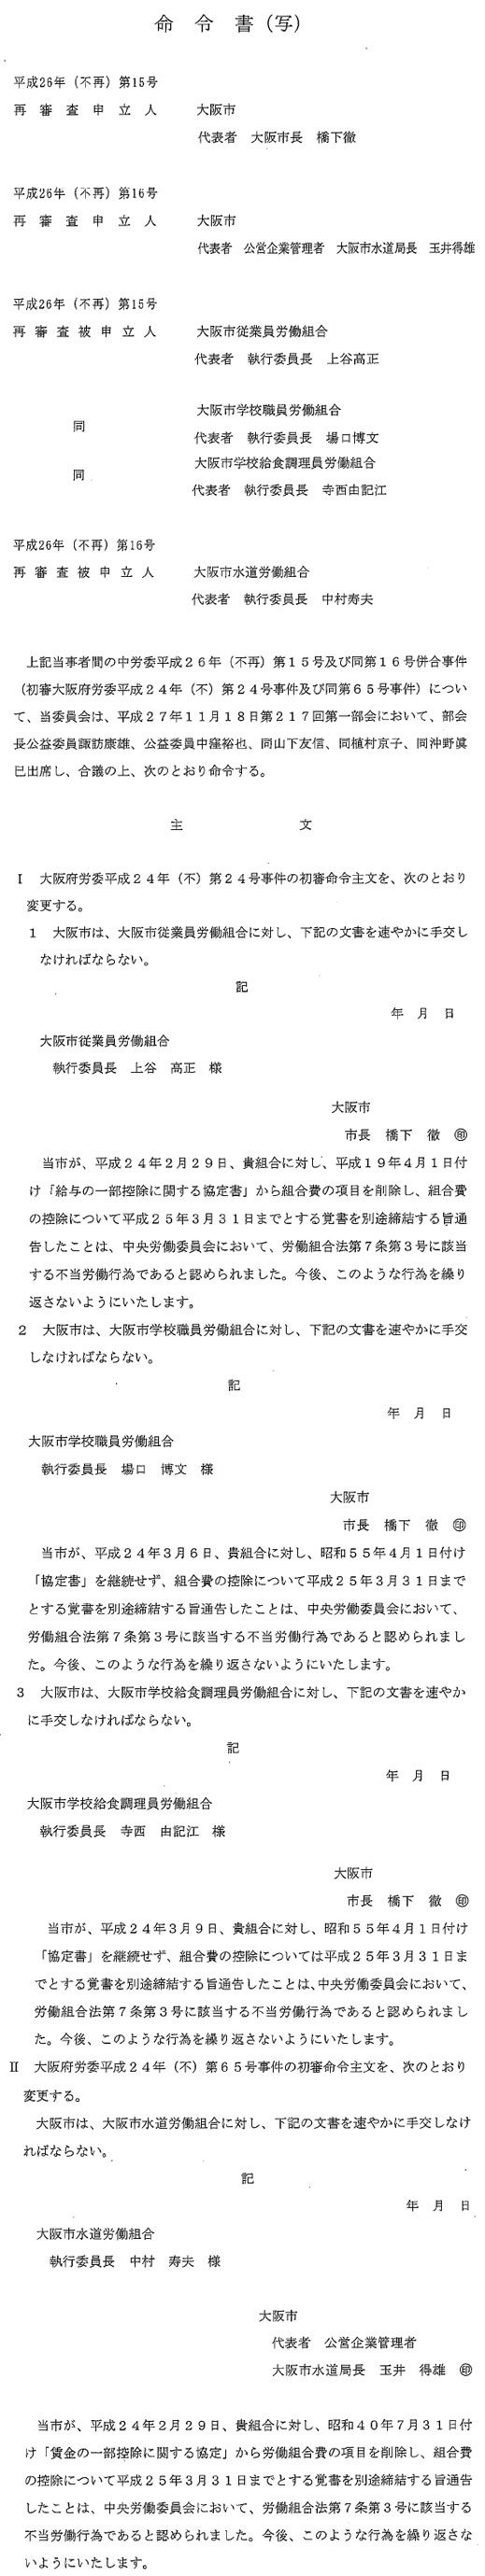 チェックオフ廃止事件：中央労働委員会は、大阪市側の再審査申立を棄却！